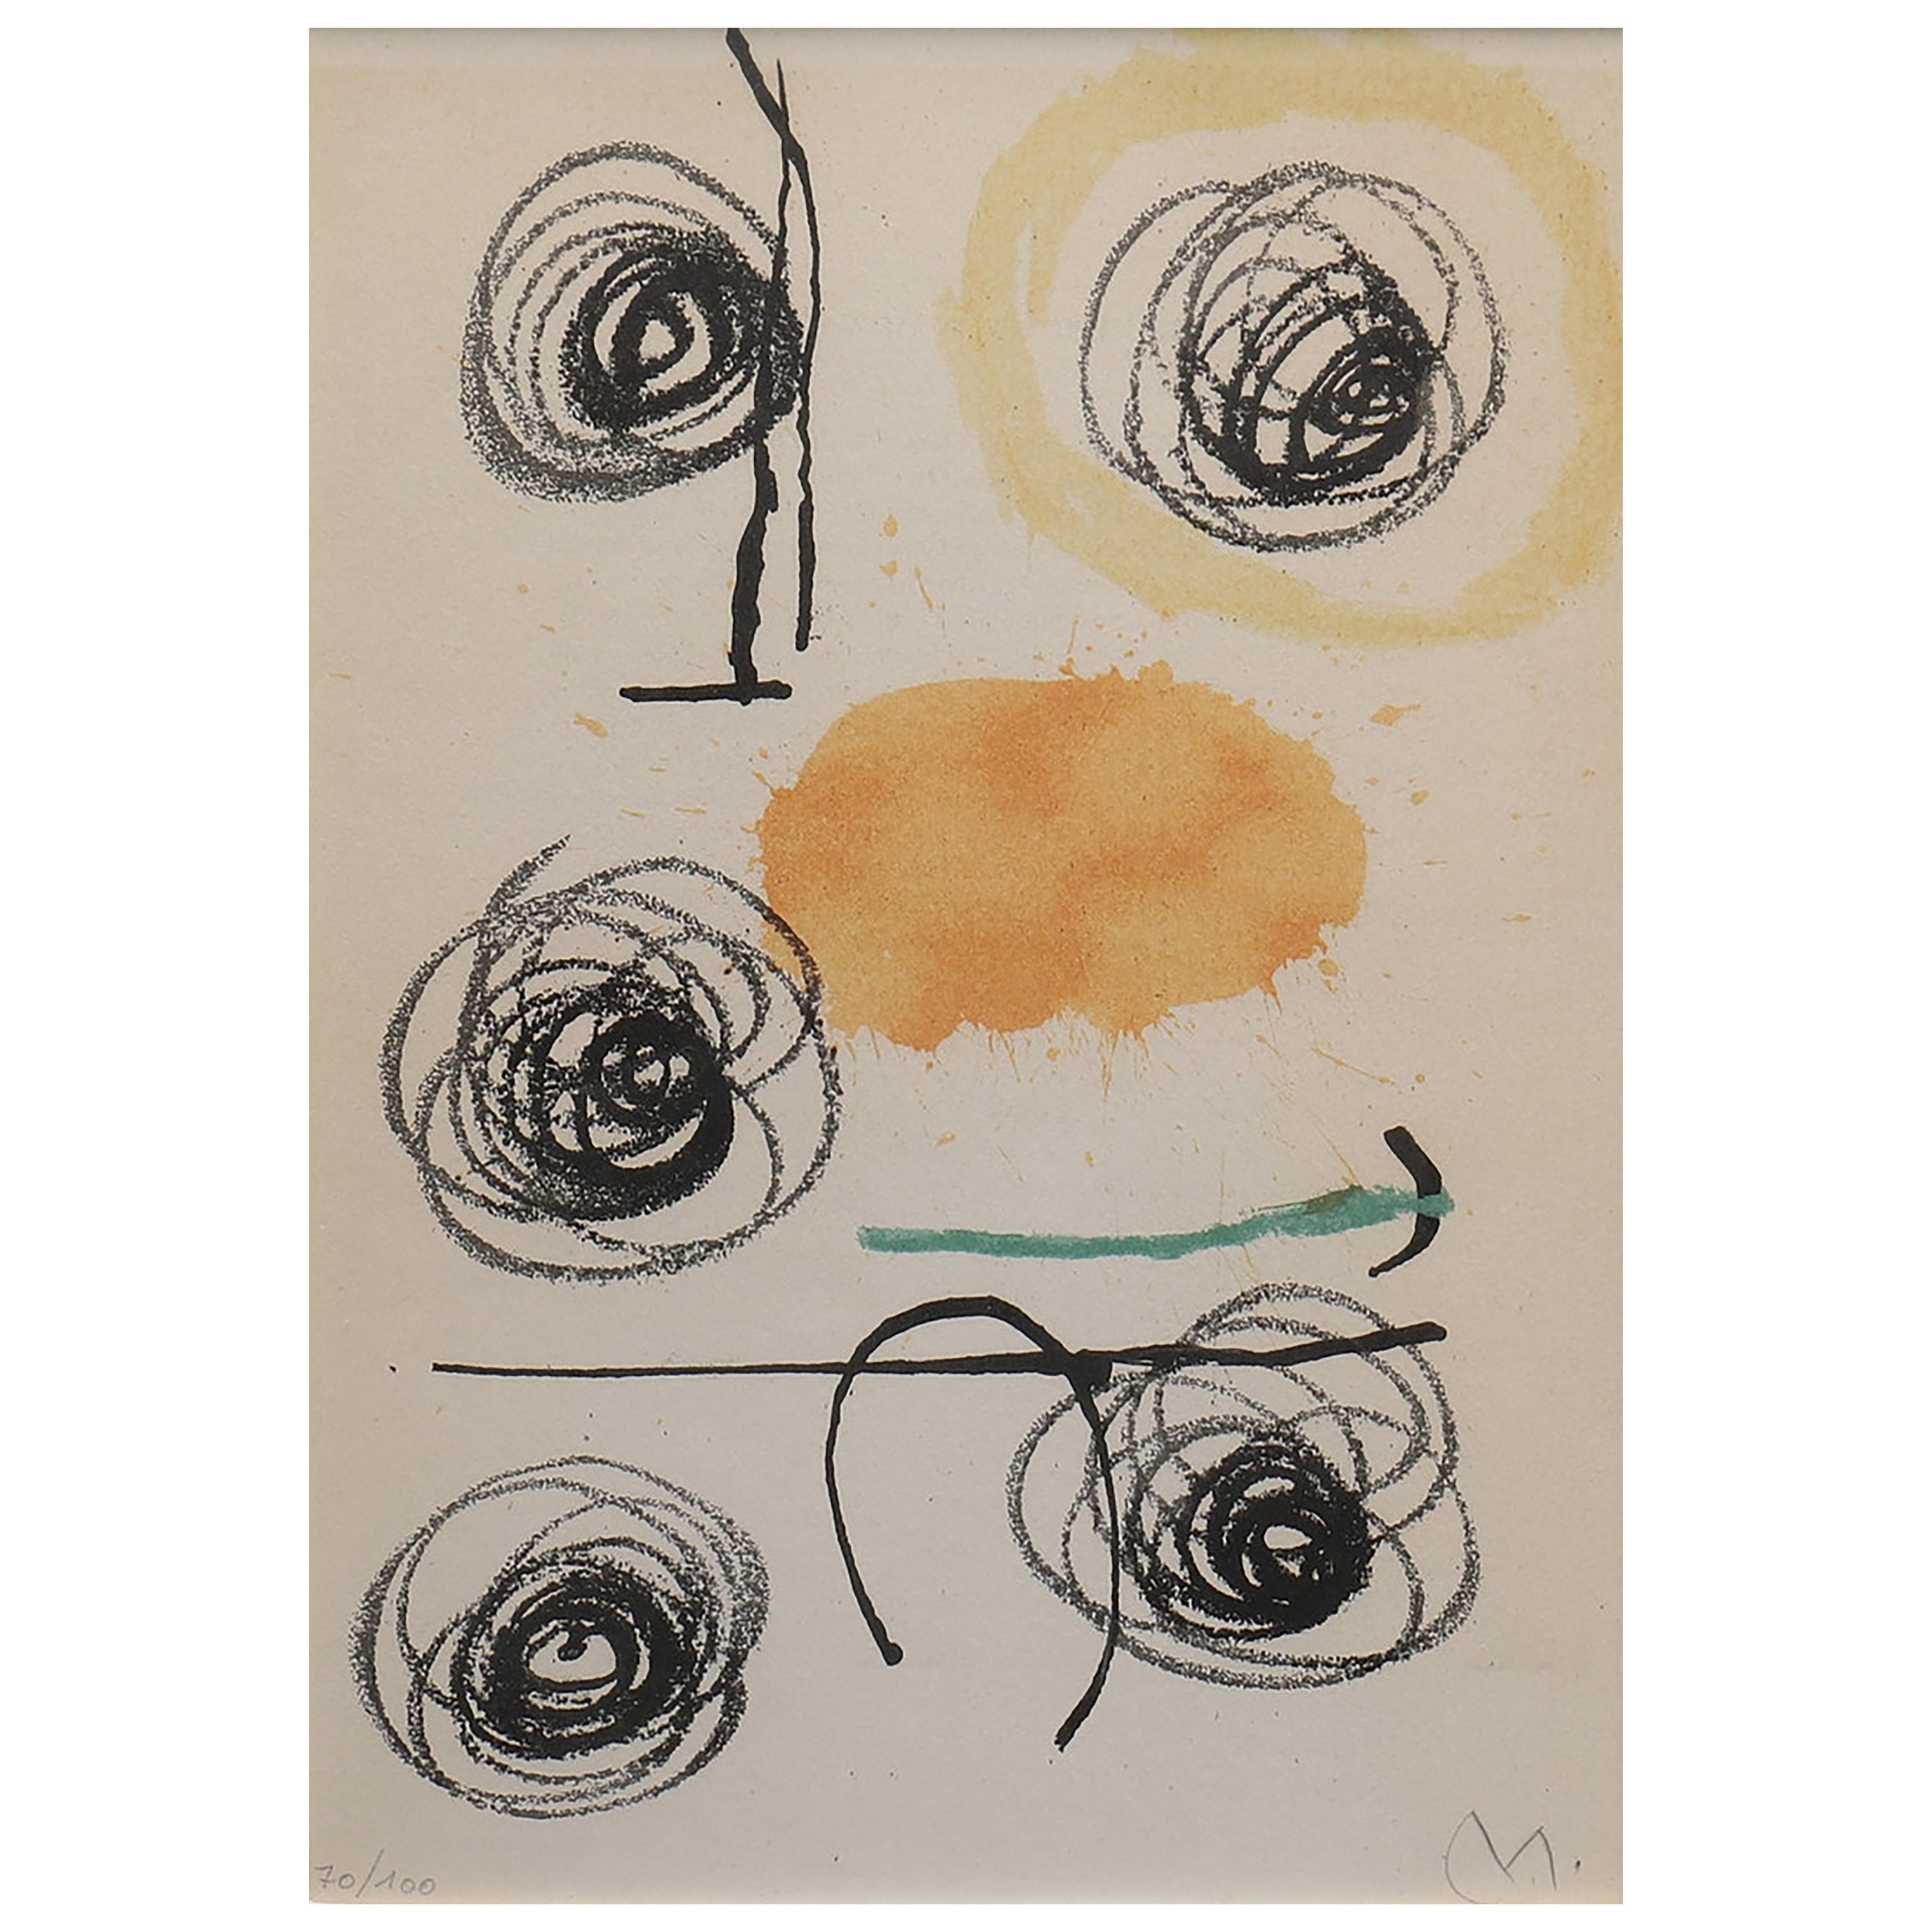 Joan Miró from “Obra Inèdita Recent”